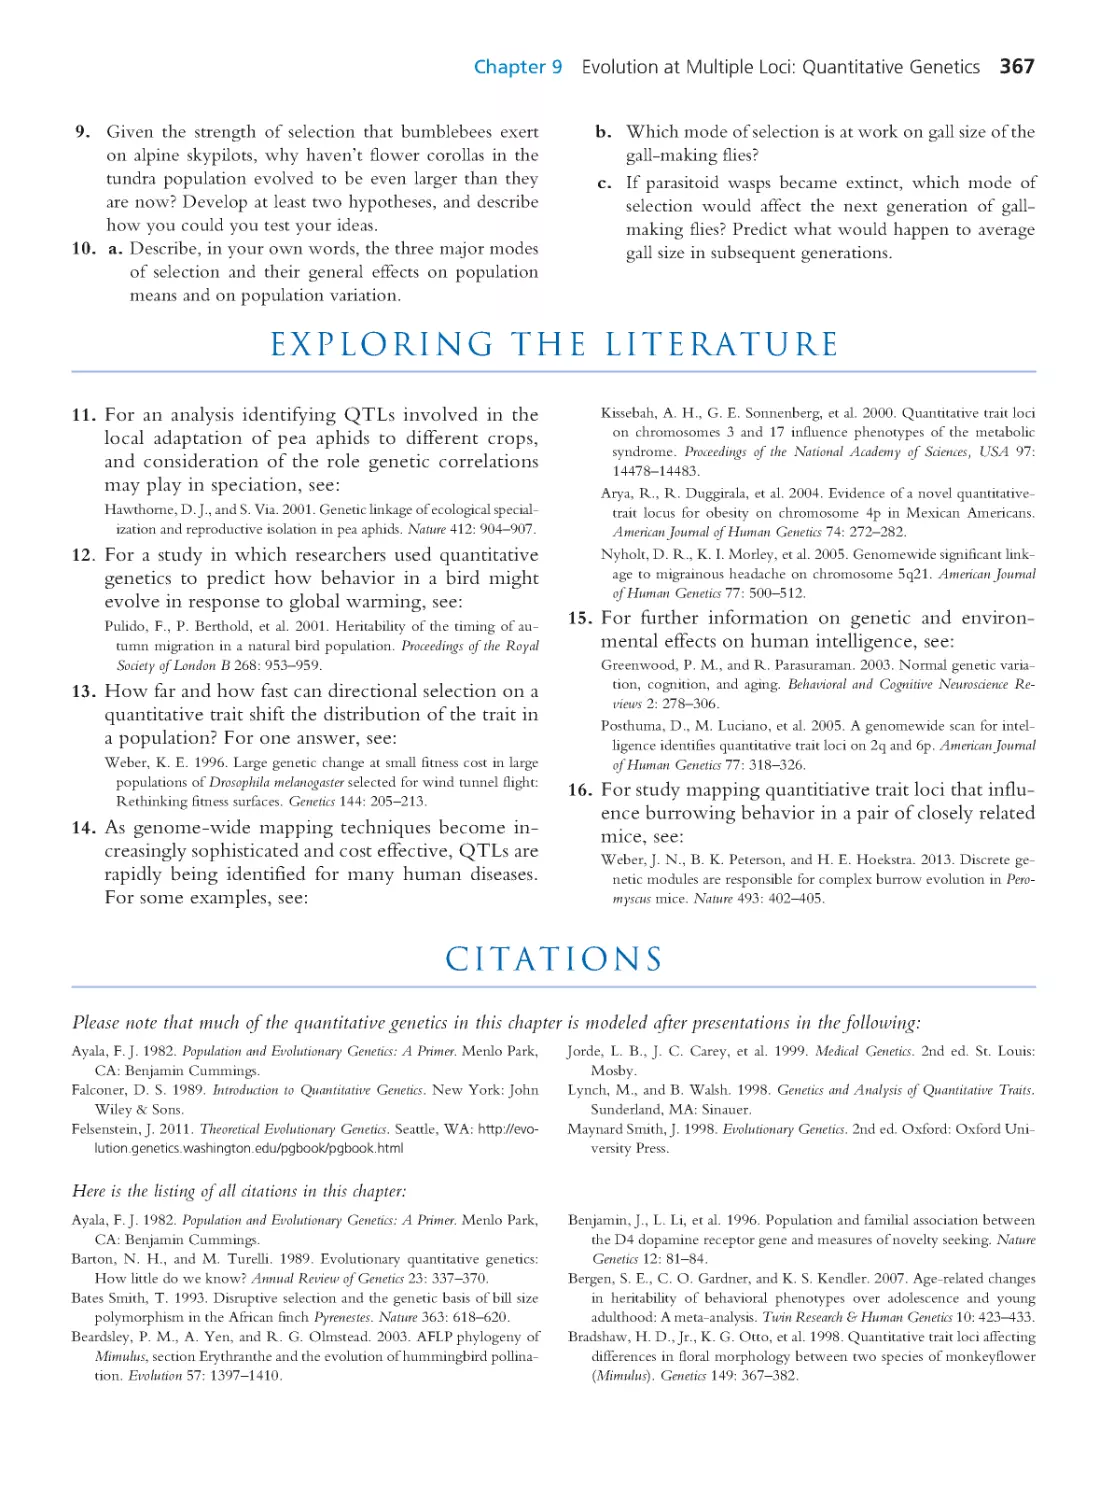 Exploring the Literature
Citations